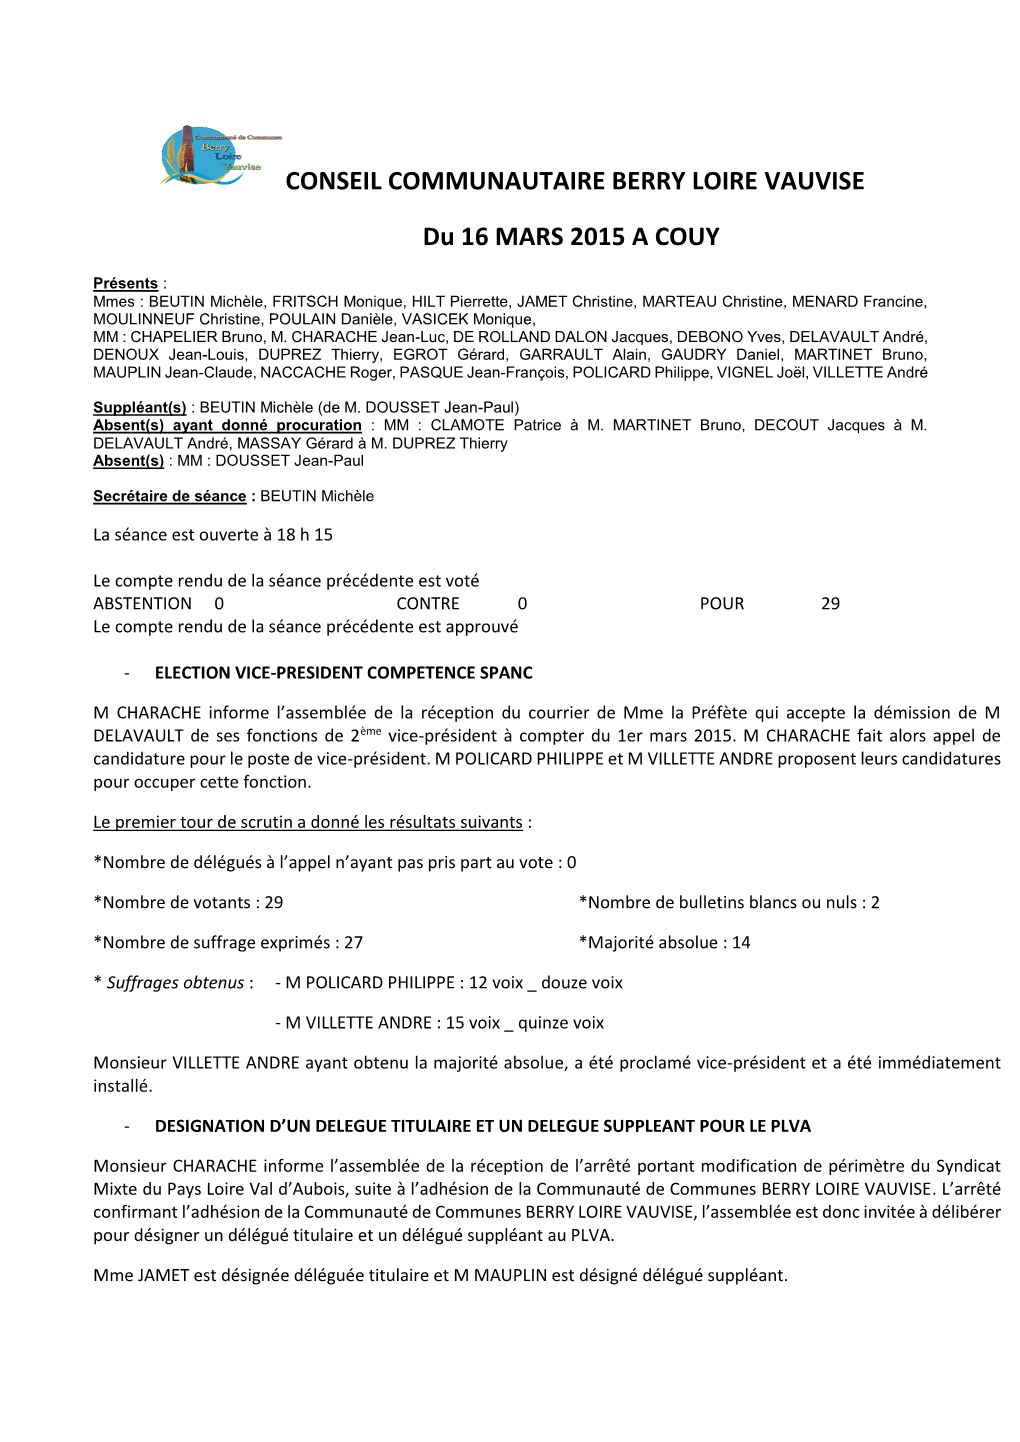 CONSEIL COMMUNAUTAIRE BERRY LOIRE VAUVISE Du 16 MARS 2015 a COUY